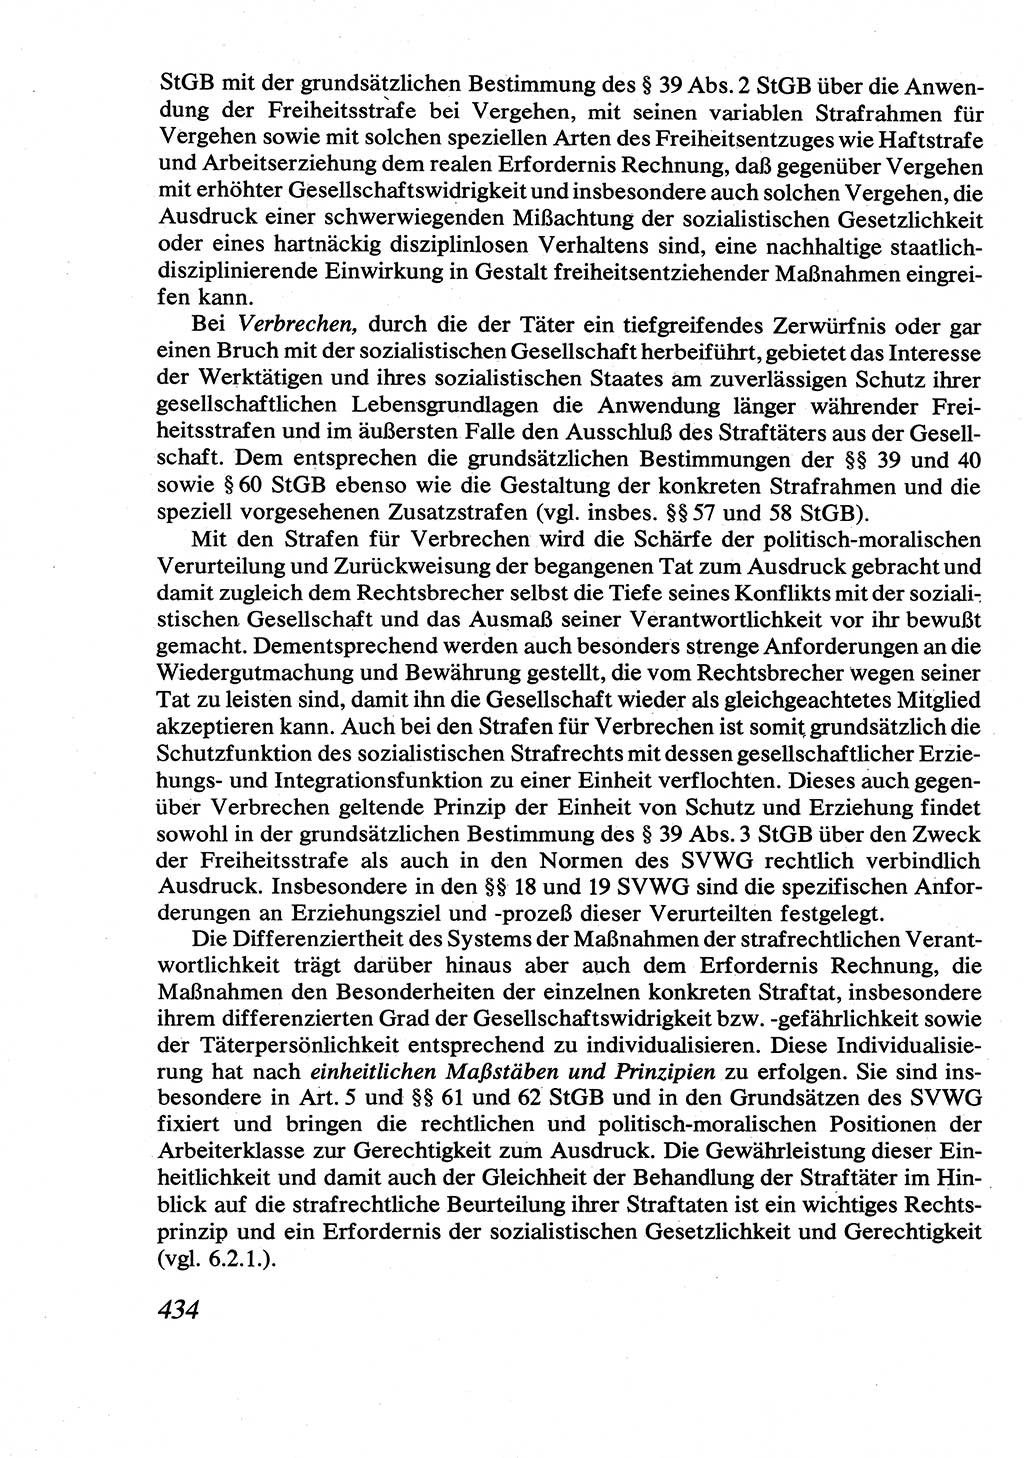 Strafrecht [Deutsche Demokratische Republik (DDR)], Allgemeiner Teil, Lehrbuch 1976, Seite 434 (Strafr. DDR AT Lb. 1976, S. 434)